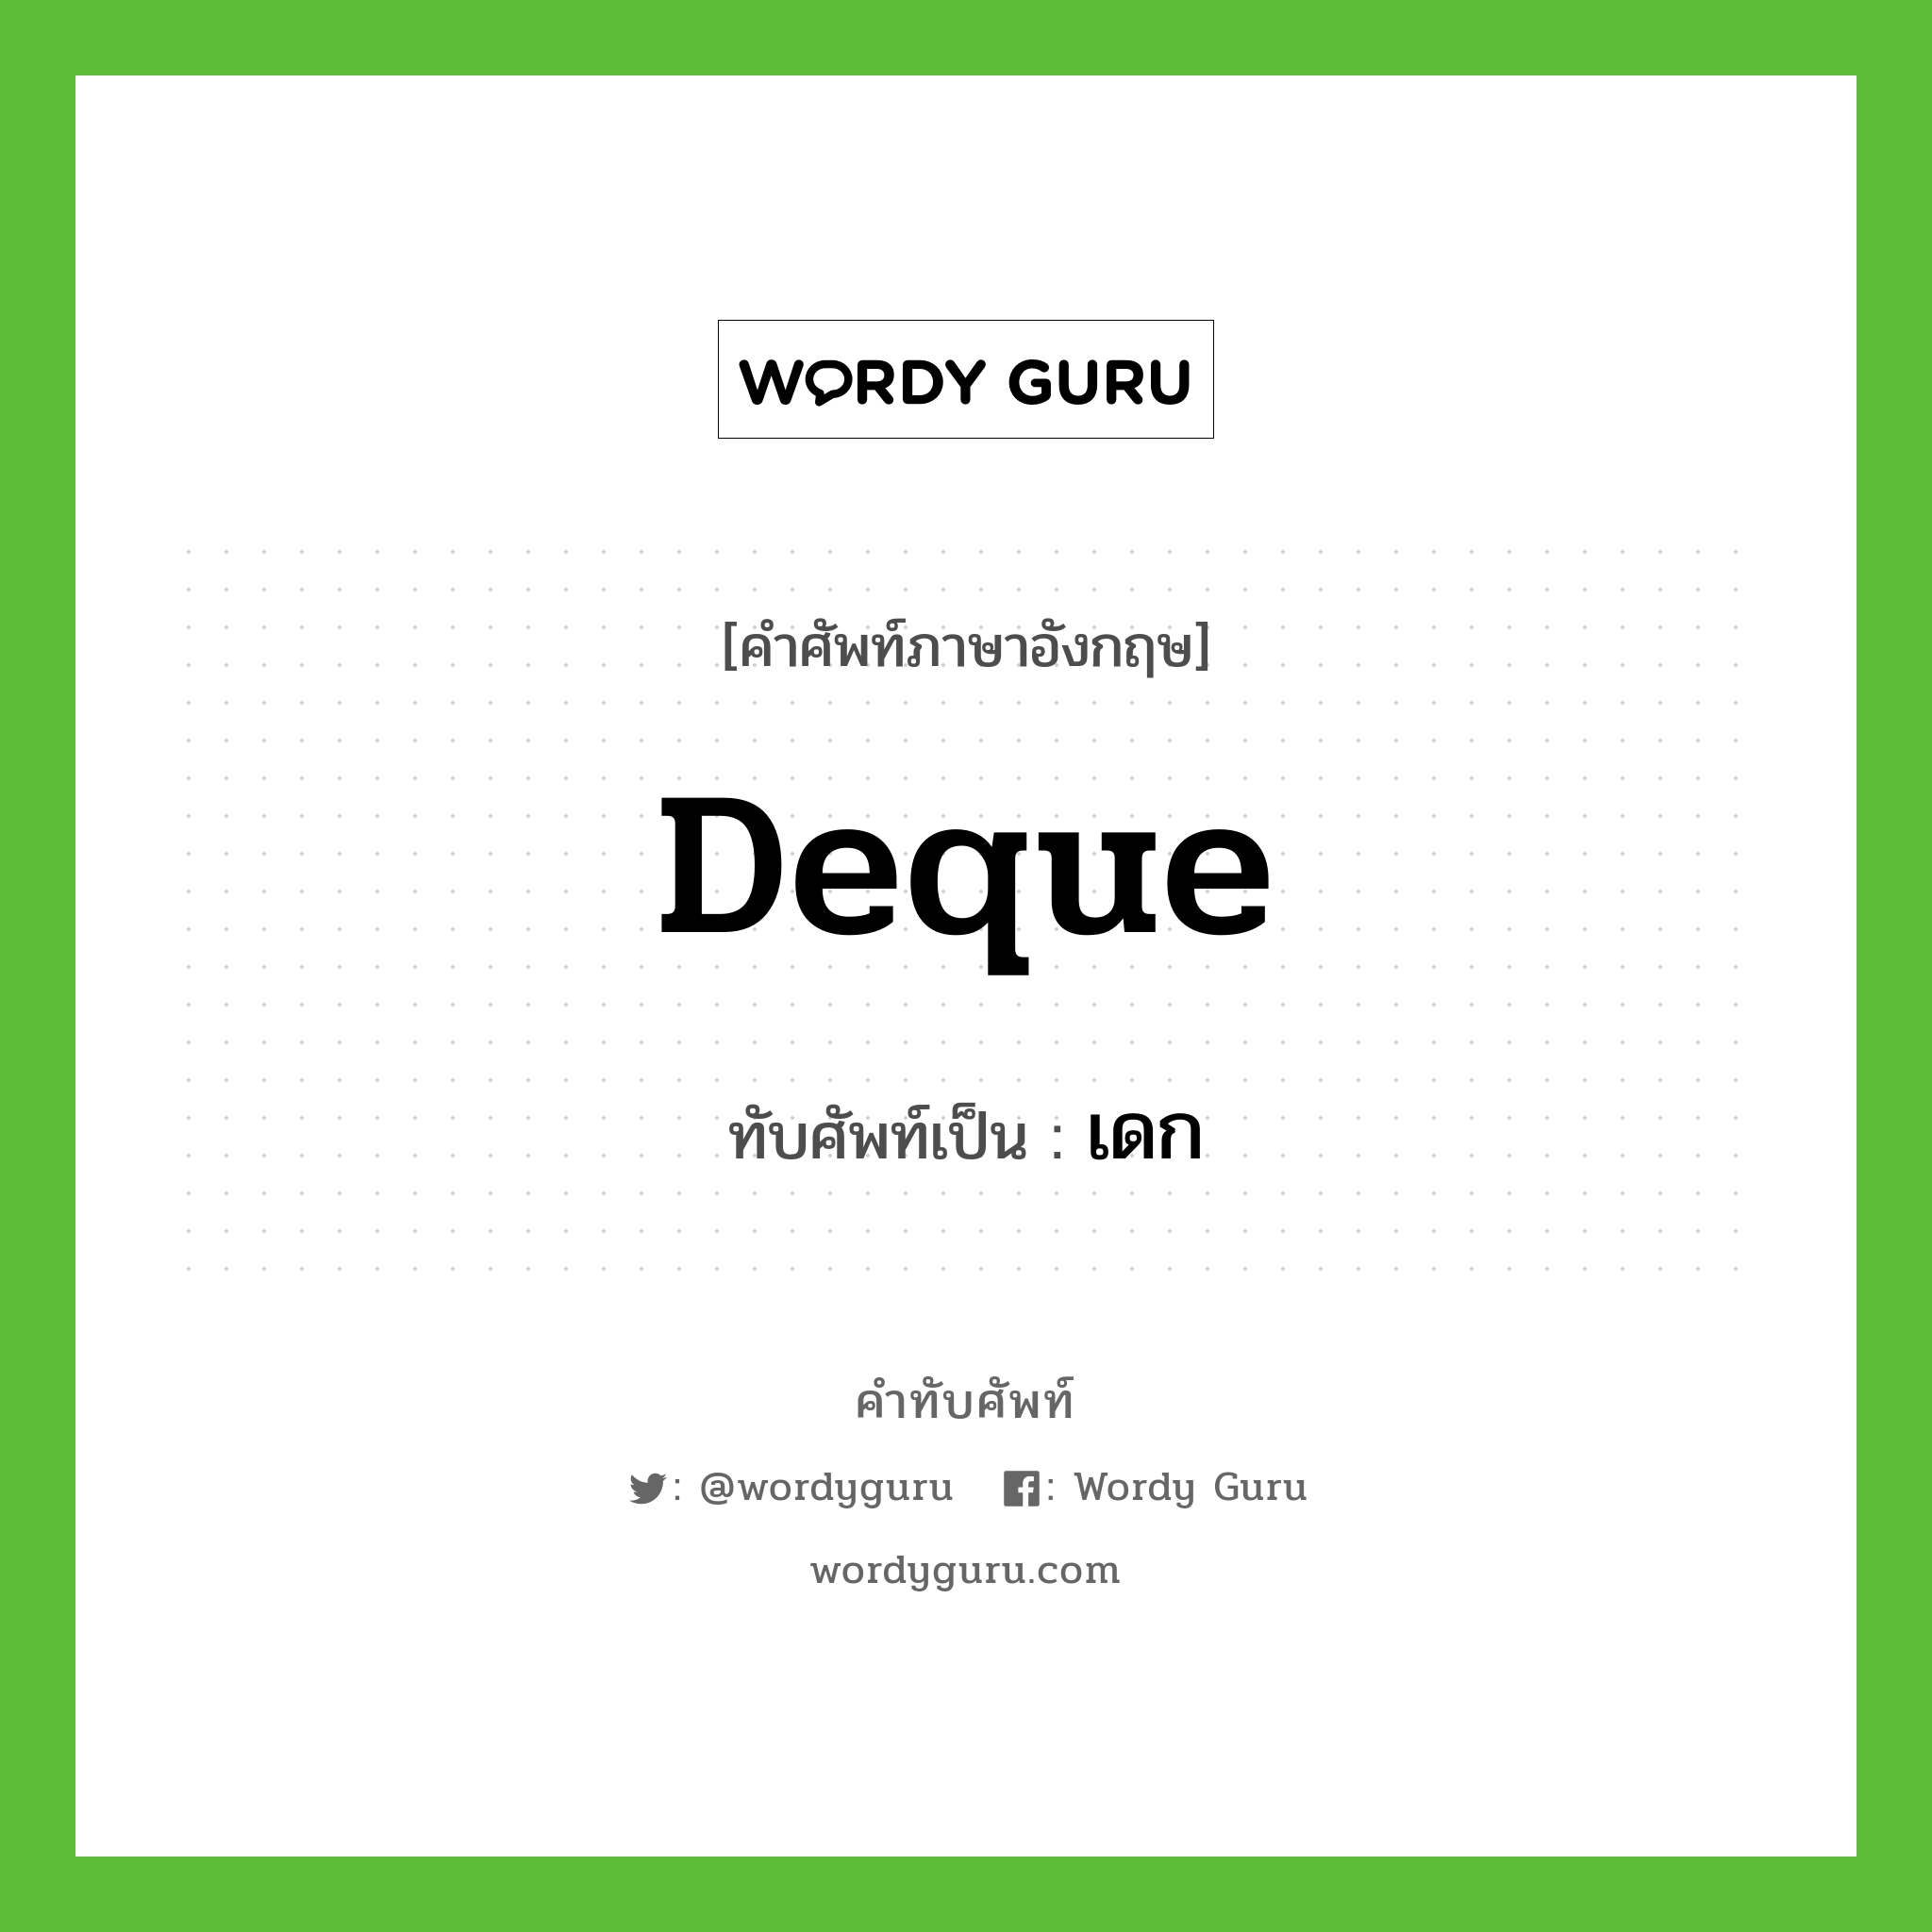 deque เขียนเป็นคำไทยว่าอะไร?, คำศัพท์ภาษาอังกฤษ deque ทับศัพท์เป็น เดก